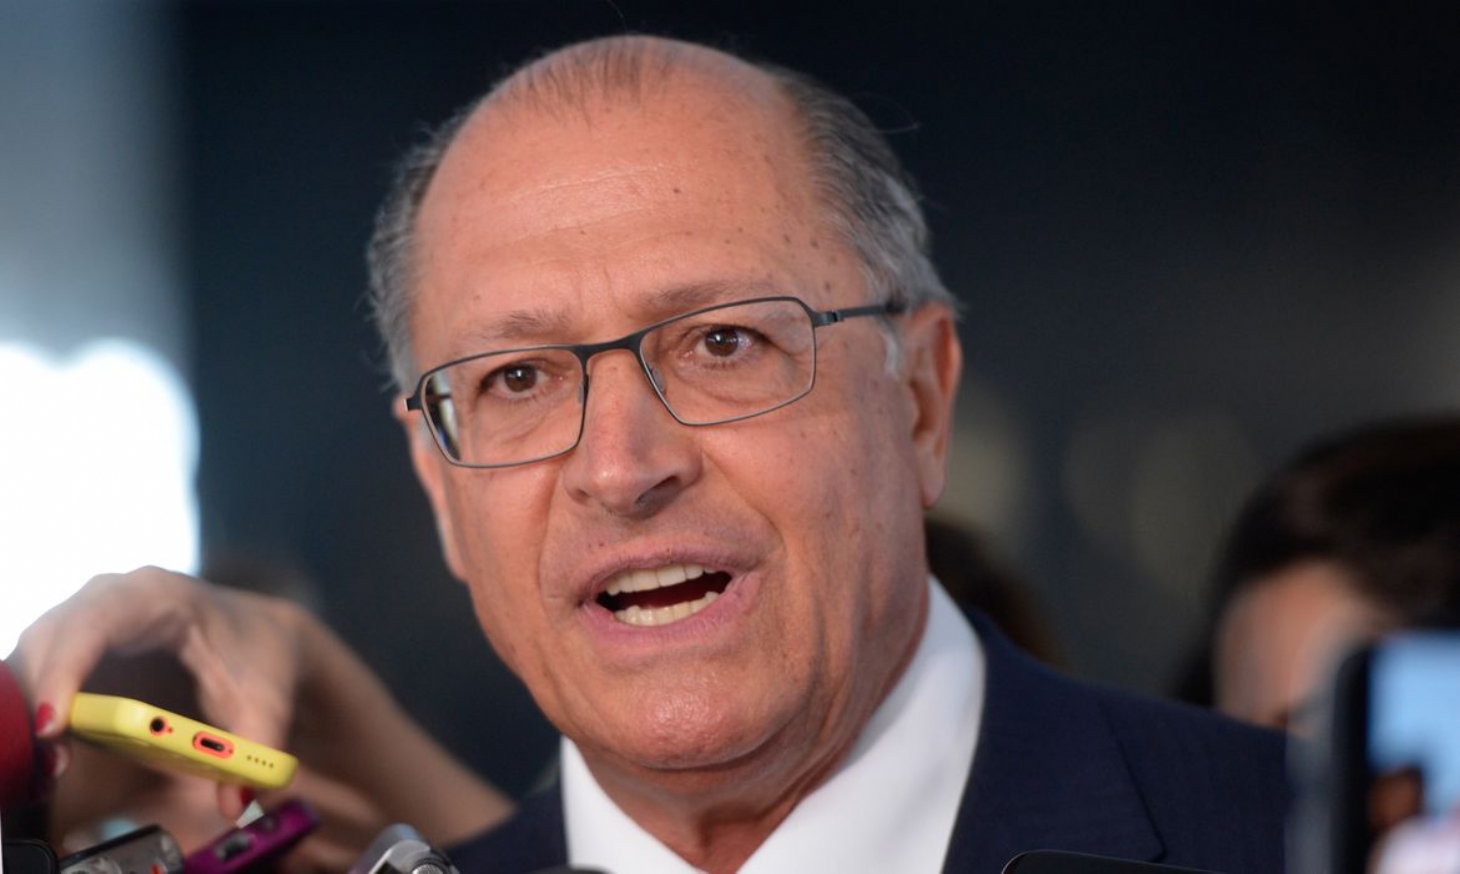 Sem assumir pré-candidatura, Alckmin cumpre agenda de pré-candidato em São Paulo | Jornal da Orla